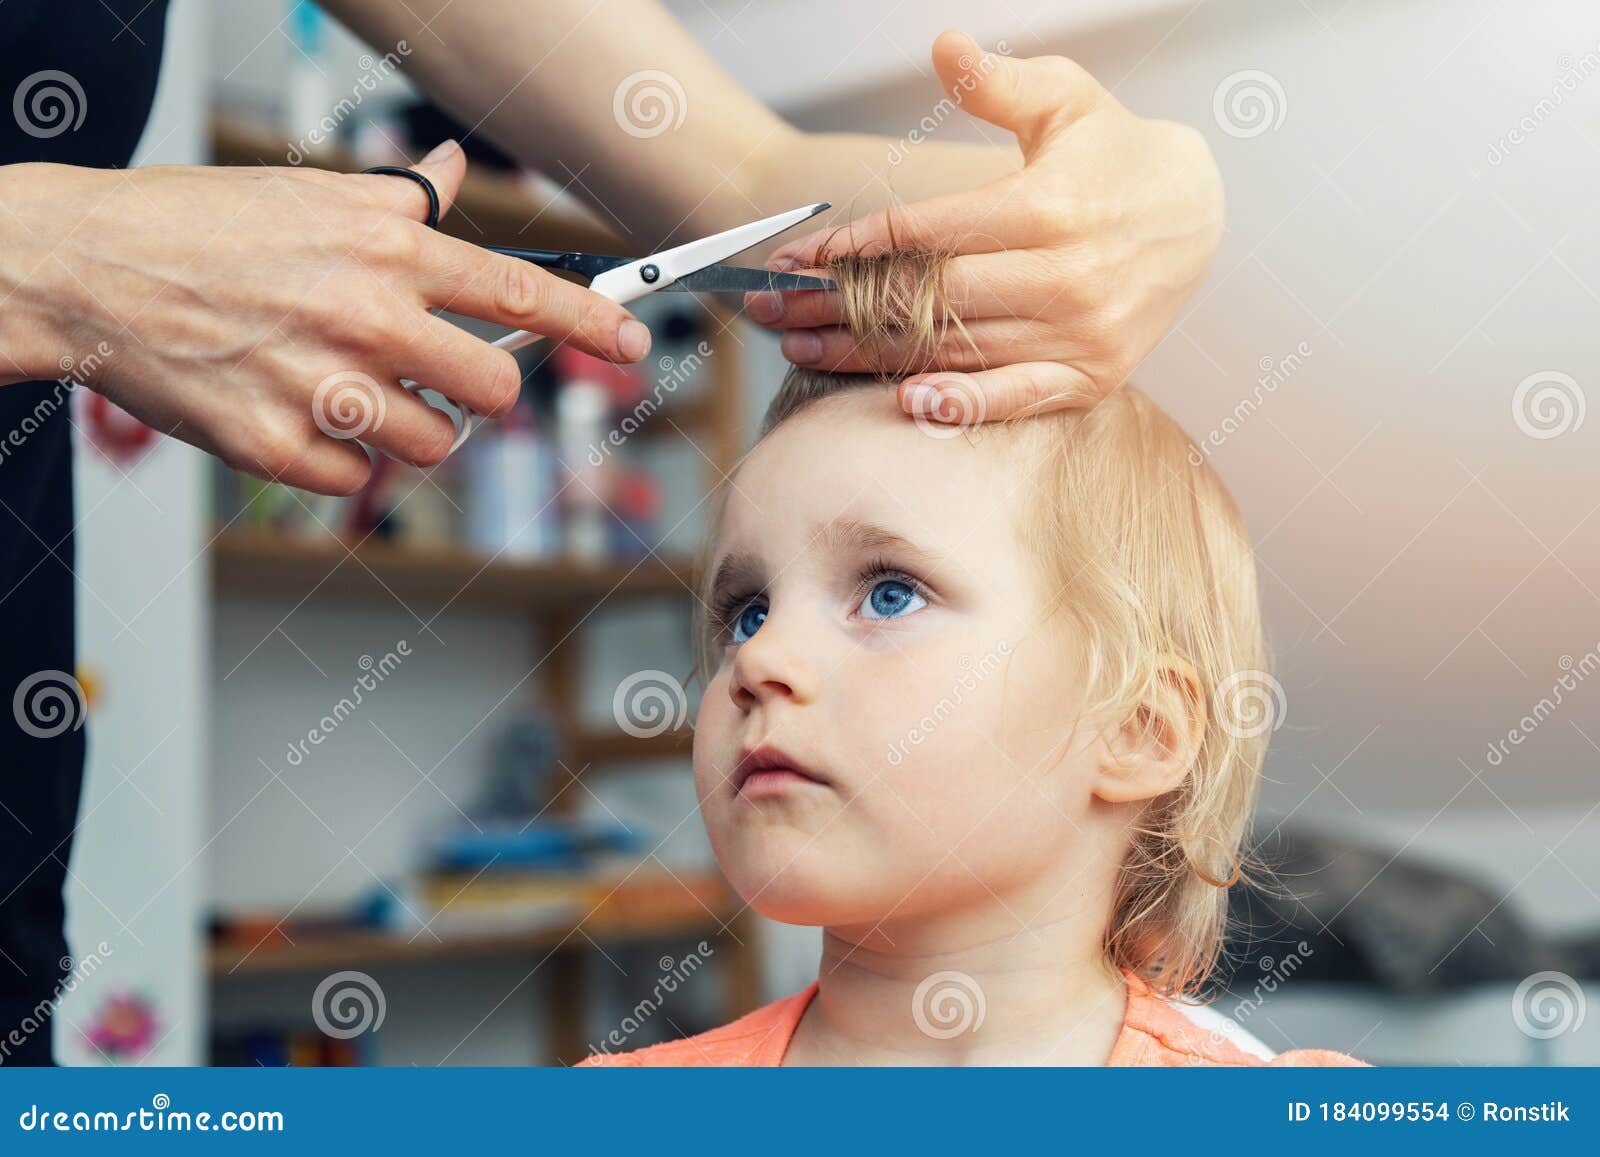 2023年【儿童理发器推荐】：儿童理发器品牌哪些值得推荐，樱舒、好孩子、易简、小熊理发器选购指南